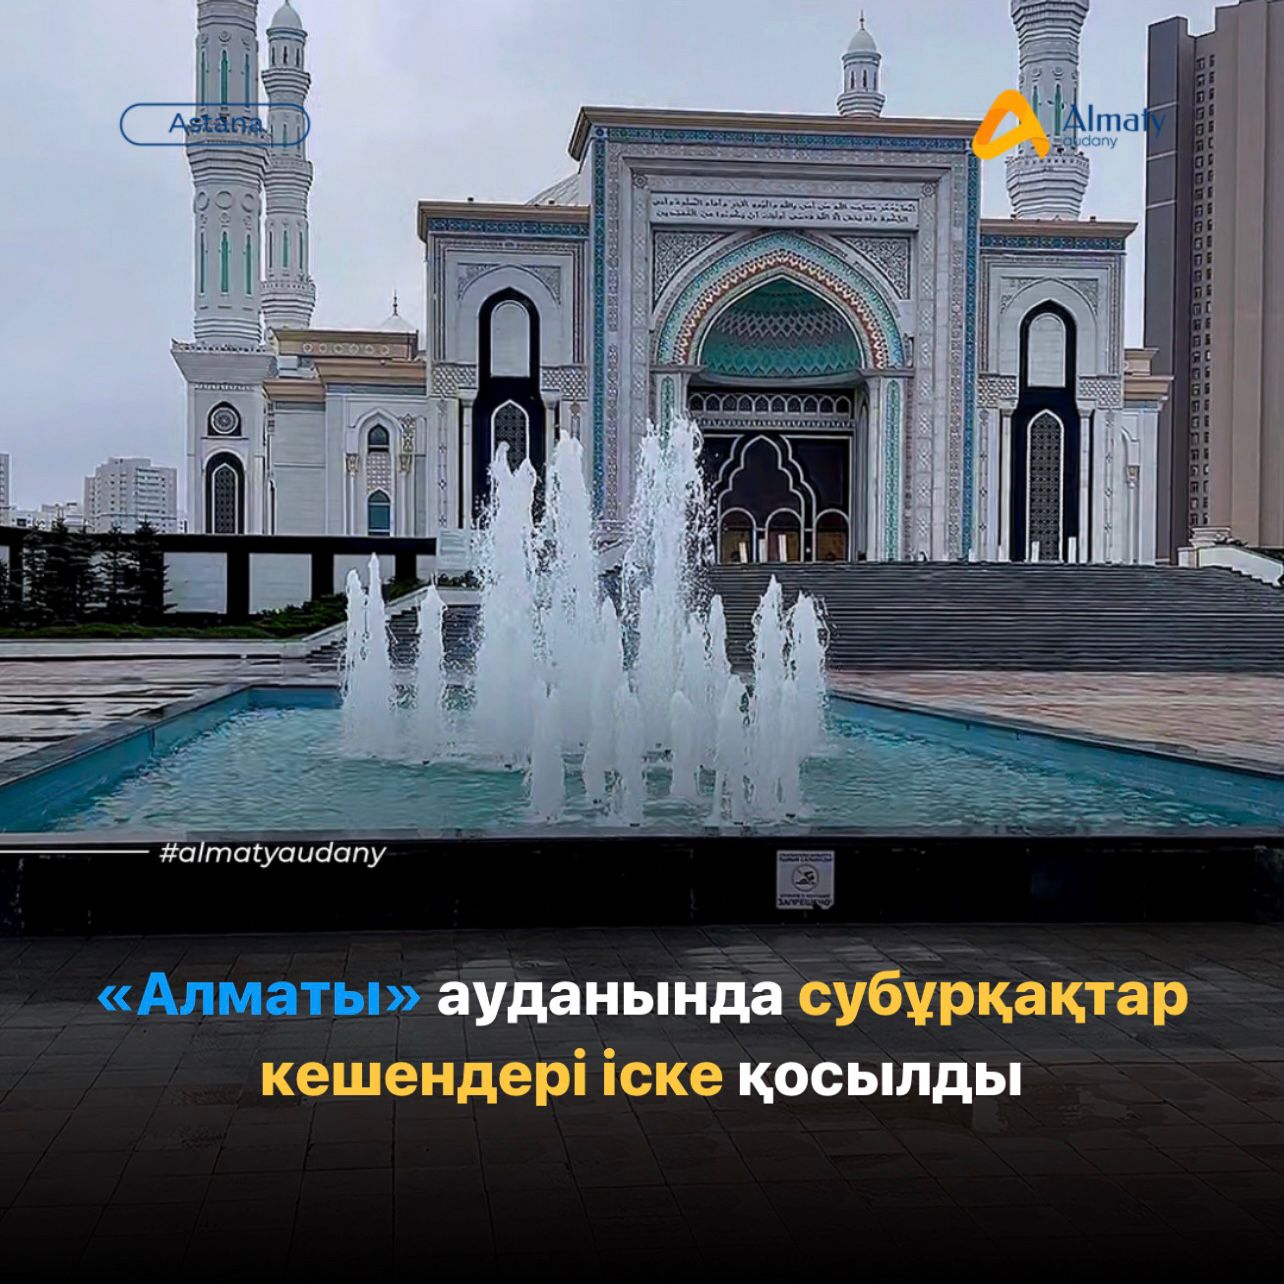 1 мая в районе «Алматы» запустили фонтаны и фонтанные комплексы.